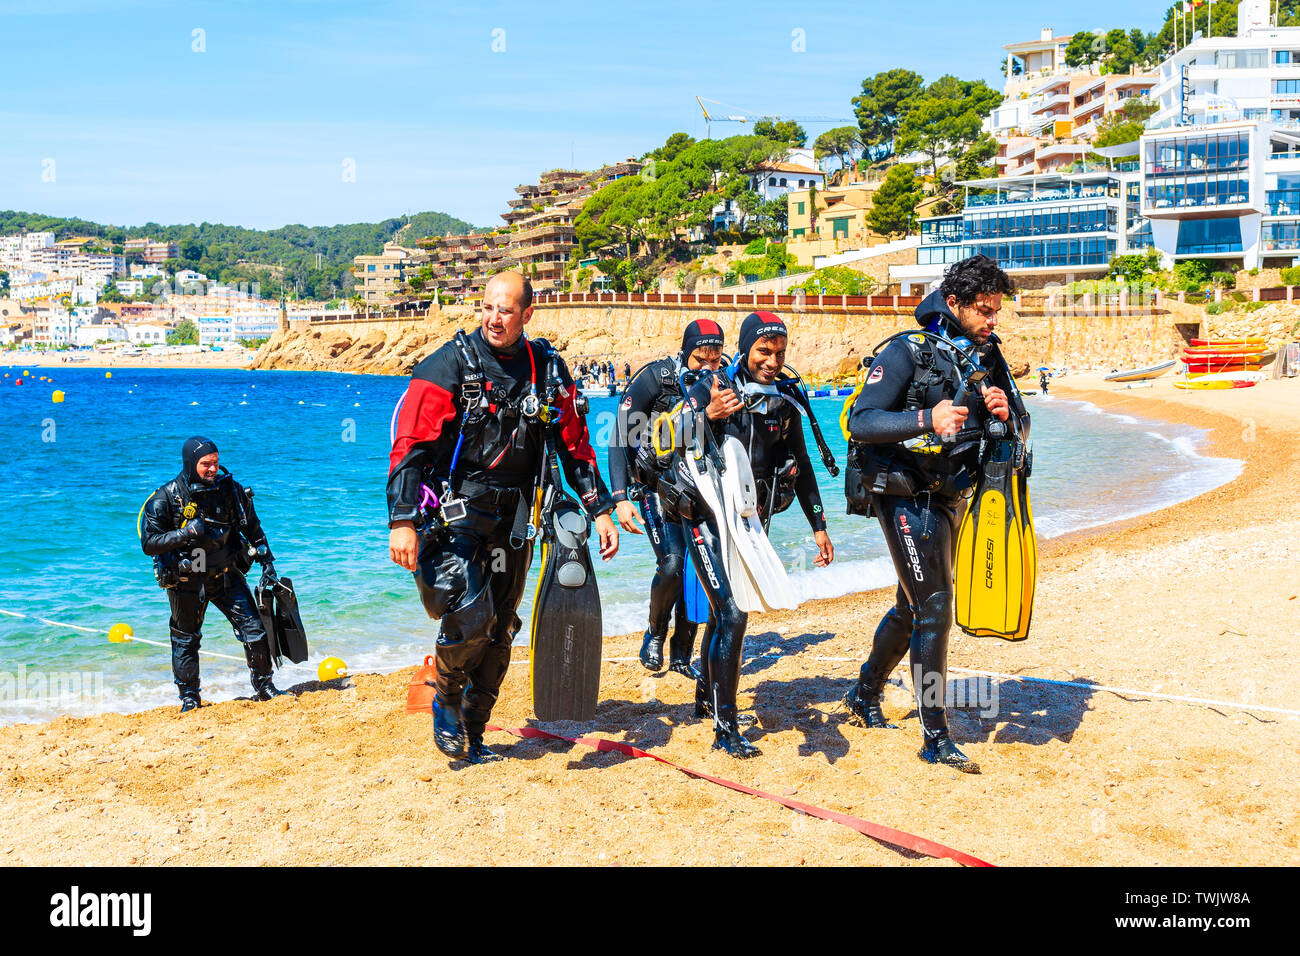 TOSSA DE MAR, Spagna - giu 3, 2019: Divers passeggiate fuori dall'acqua sulla spiaggia di Tossa de Mar città, Costa Brava, Spagna. Foto Stock